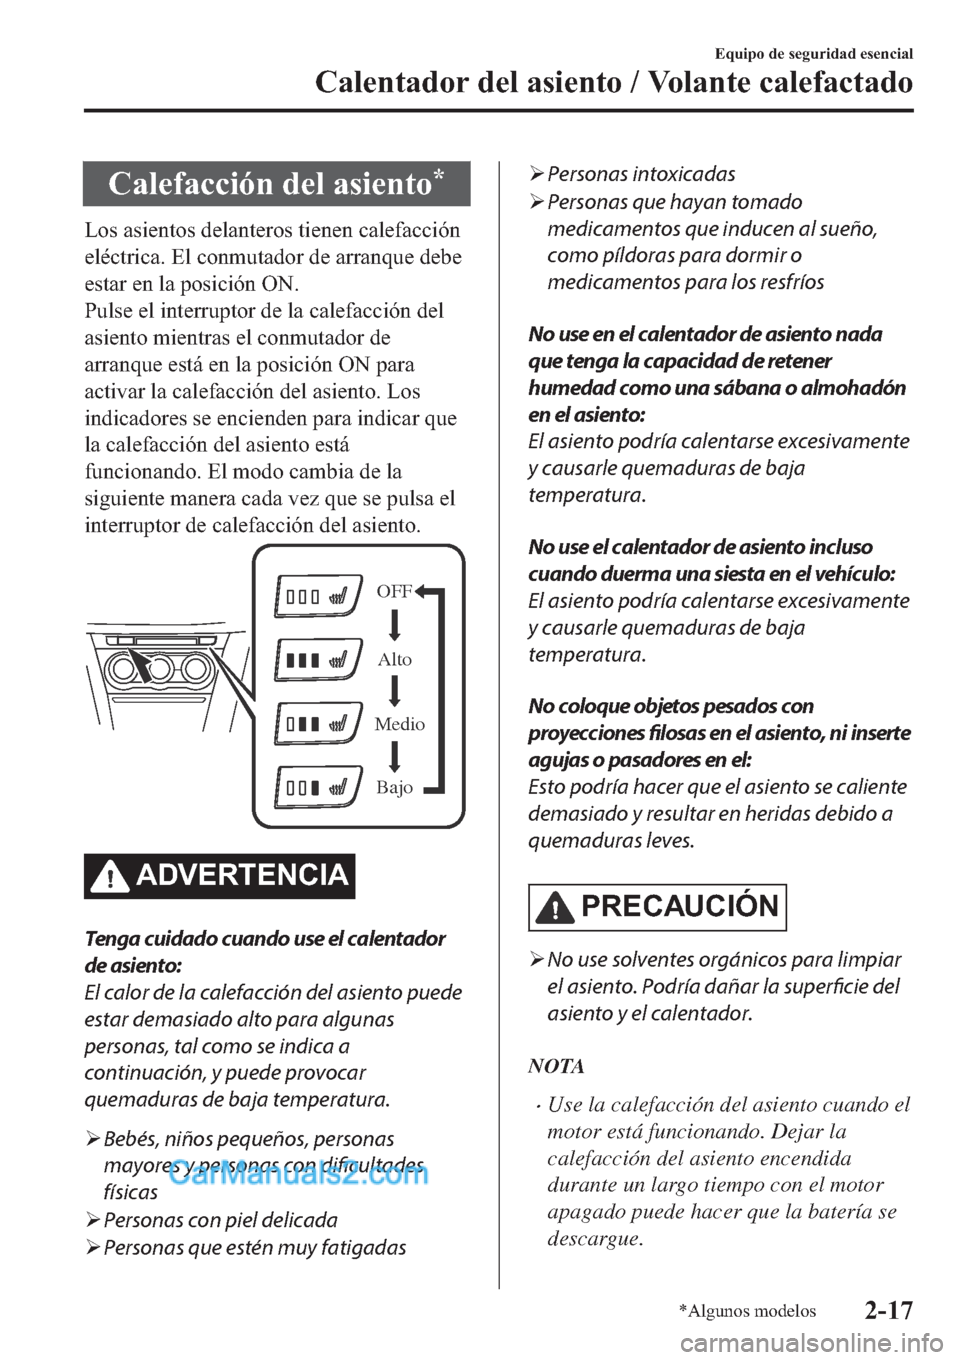 MAZDA MODEL 2 2019  Manual del propietario (in Spanish) �&�D�O�H�I�D�F�F�L�y�Q��G�H�O��D�V�L�H�Q�W�R�
�/�R�V��D�V�L�H�Q�W�R�V��G�H�O�D�Q�W�H�U�R�V��W�L�H�Q�H�Q��F�D�O�H�I�D�F�F�L�y�Q
�H�O�p�F�W�U�L�F�D���(�O��F�R�Q�P�X�W�D�G�R�U��G�H��D�U�U�D�Q